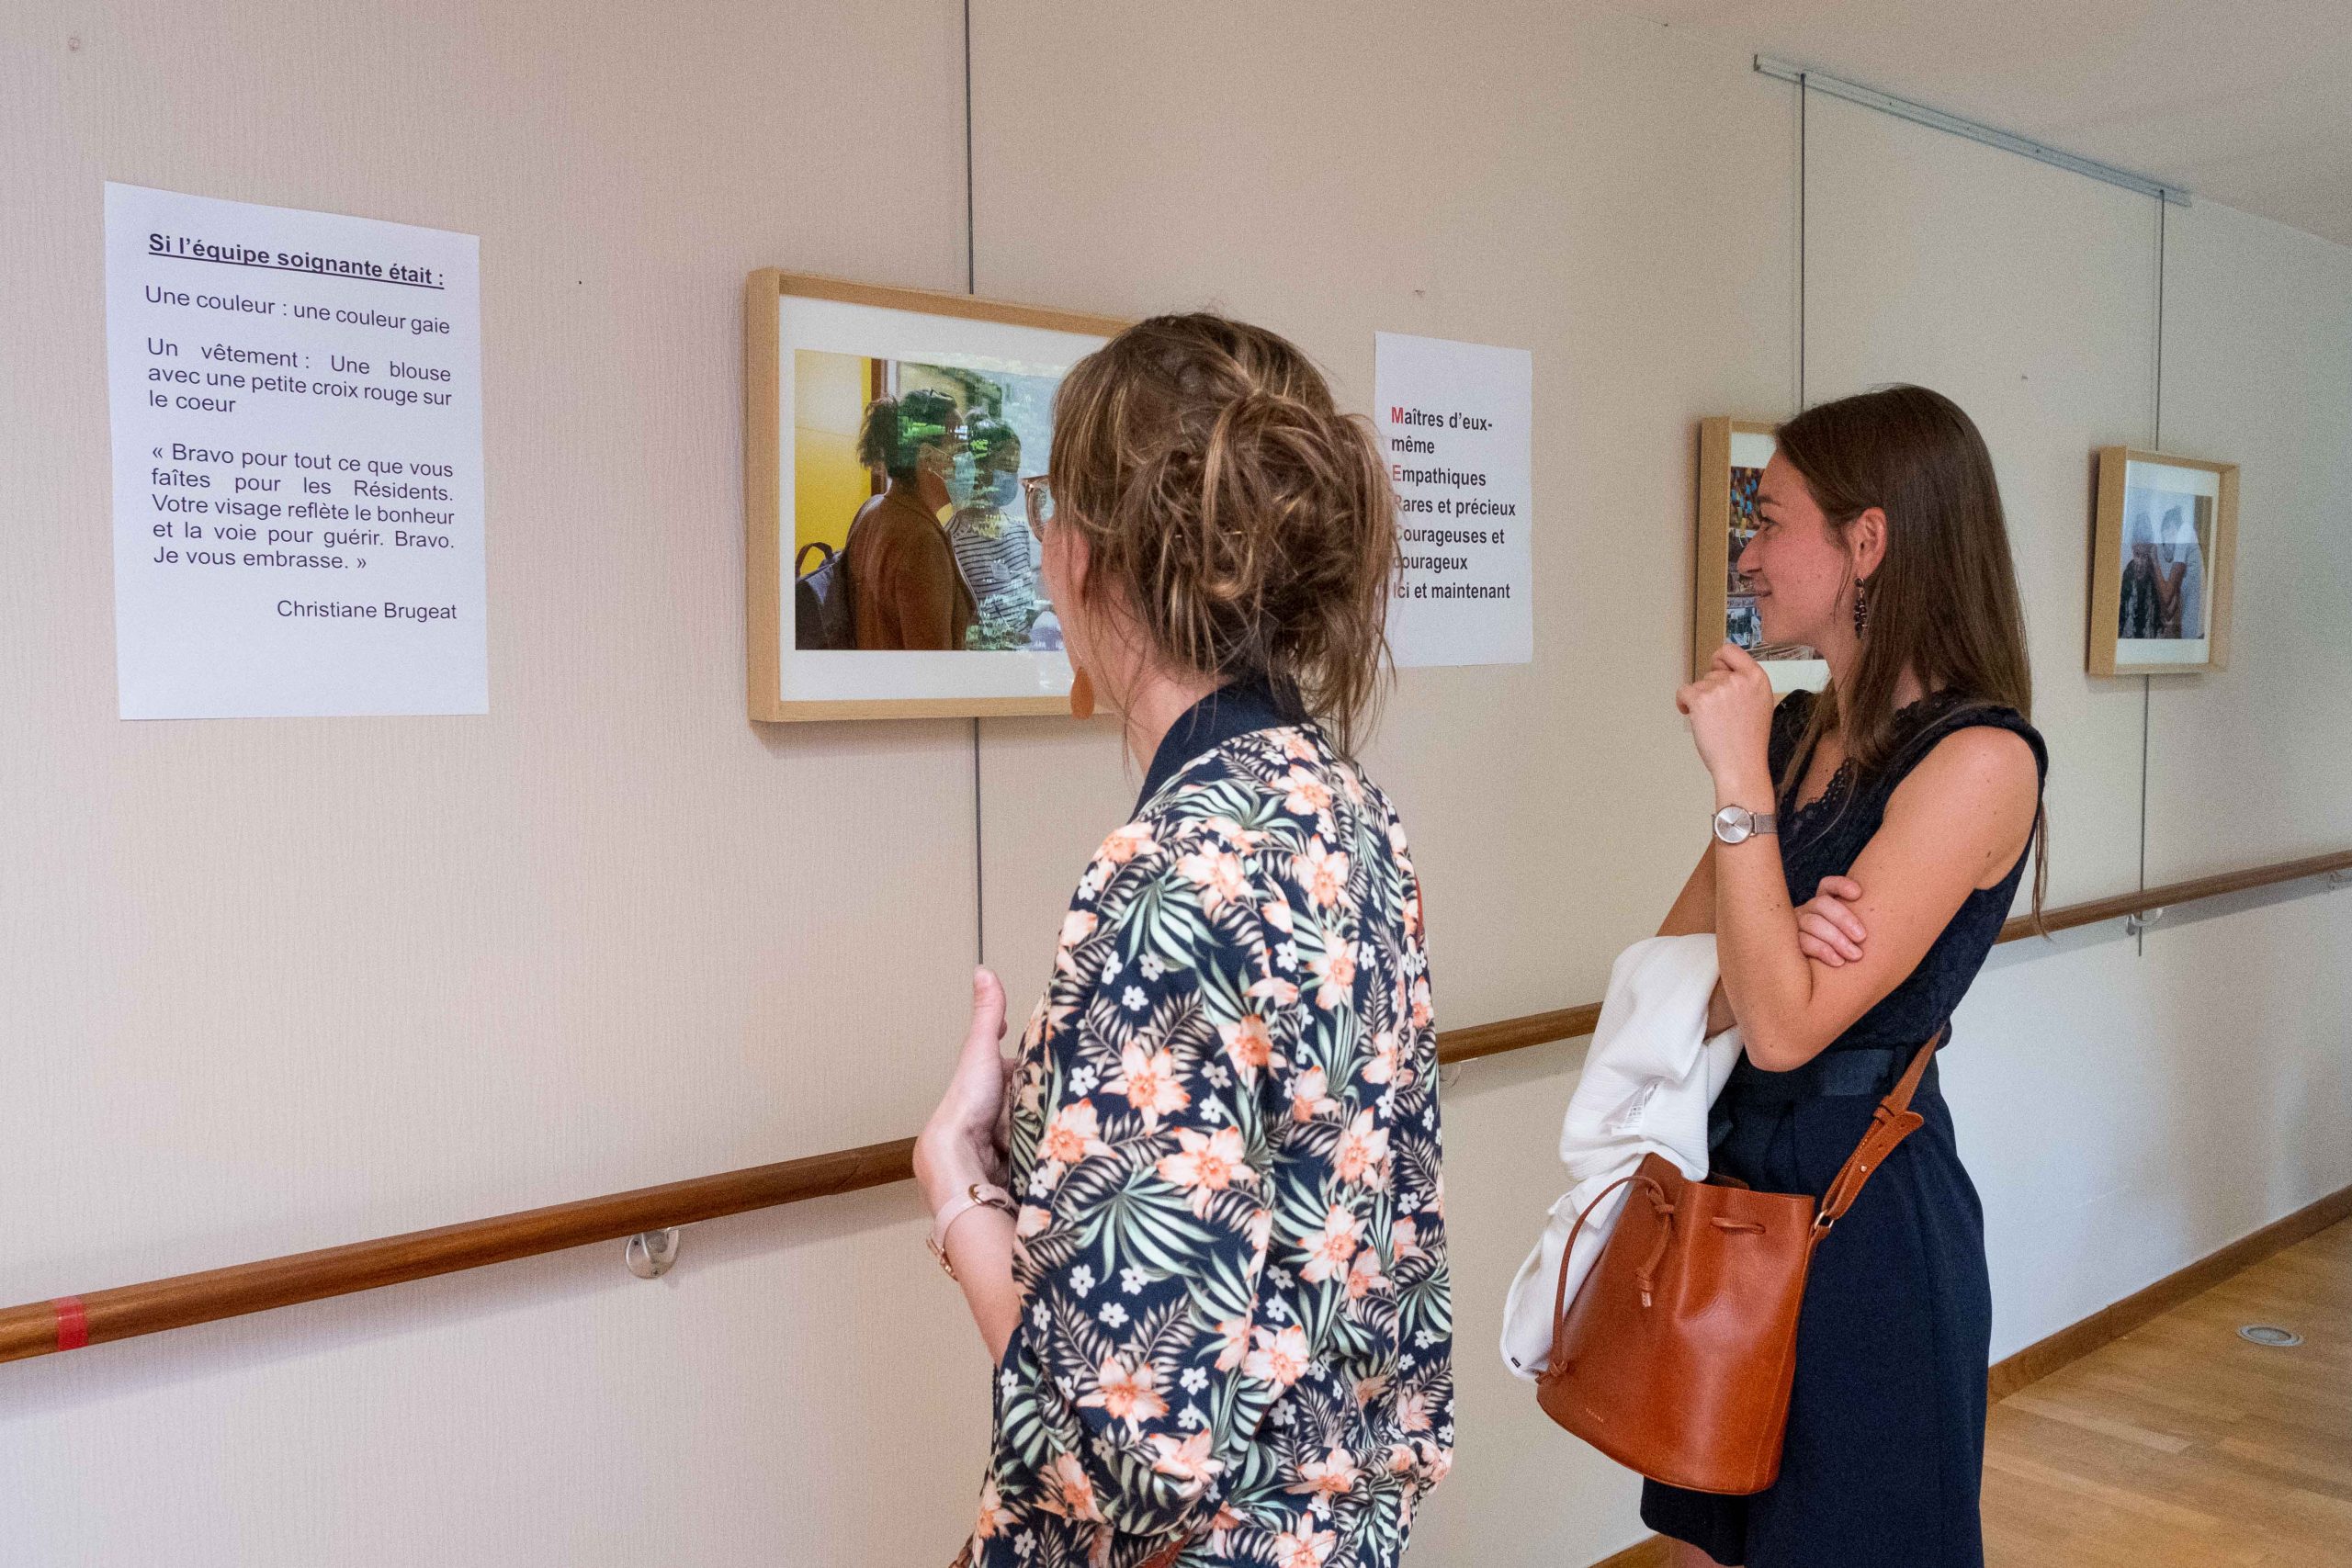 Deux personnes regardant les photos et les textes accrochés au mur, à l'occasion du vernissage d'une exposition au sein d'un EHPAD